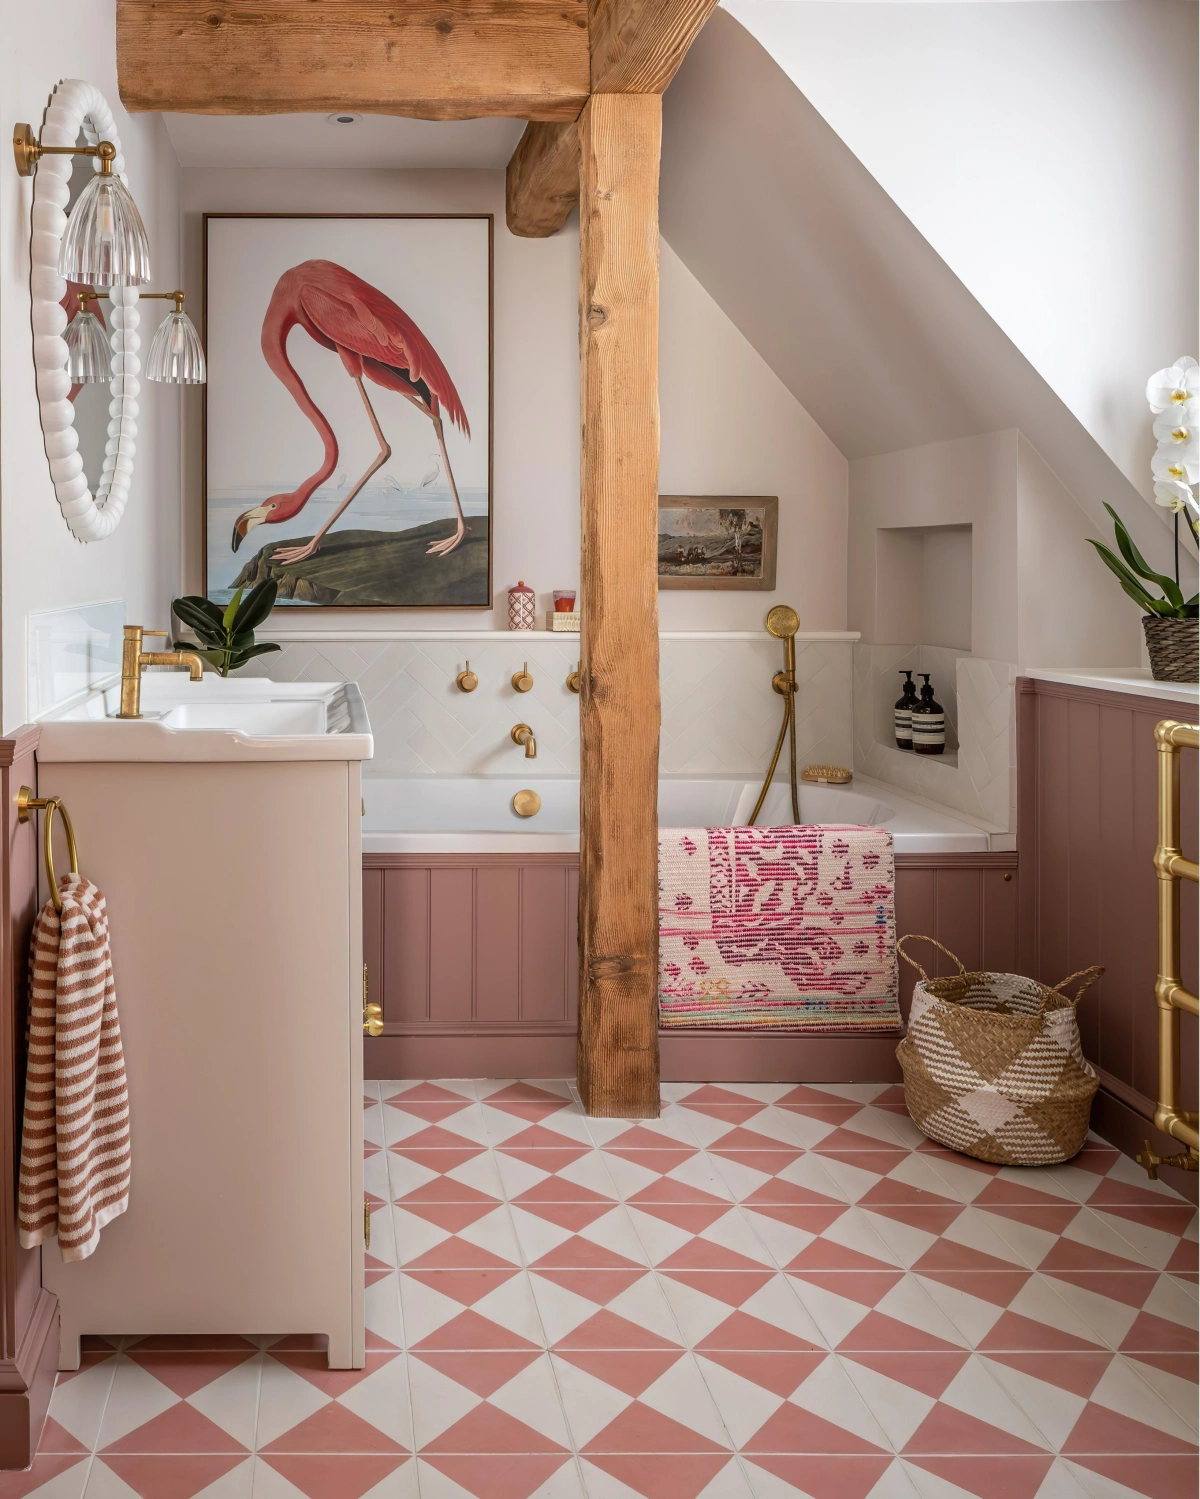 colonne bois poutres apparentes petite salle de bain carreaux blanc et rose